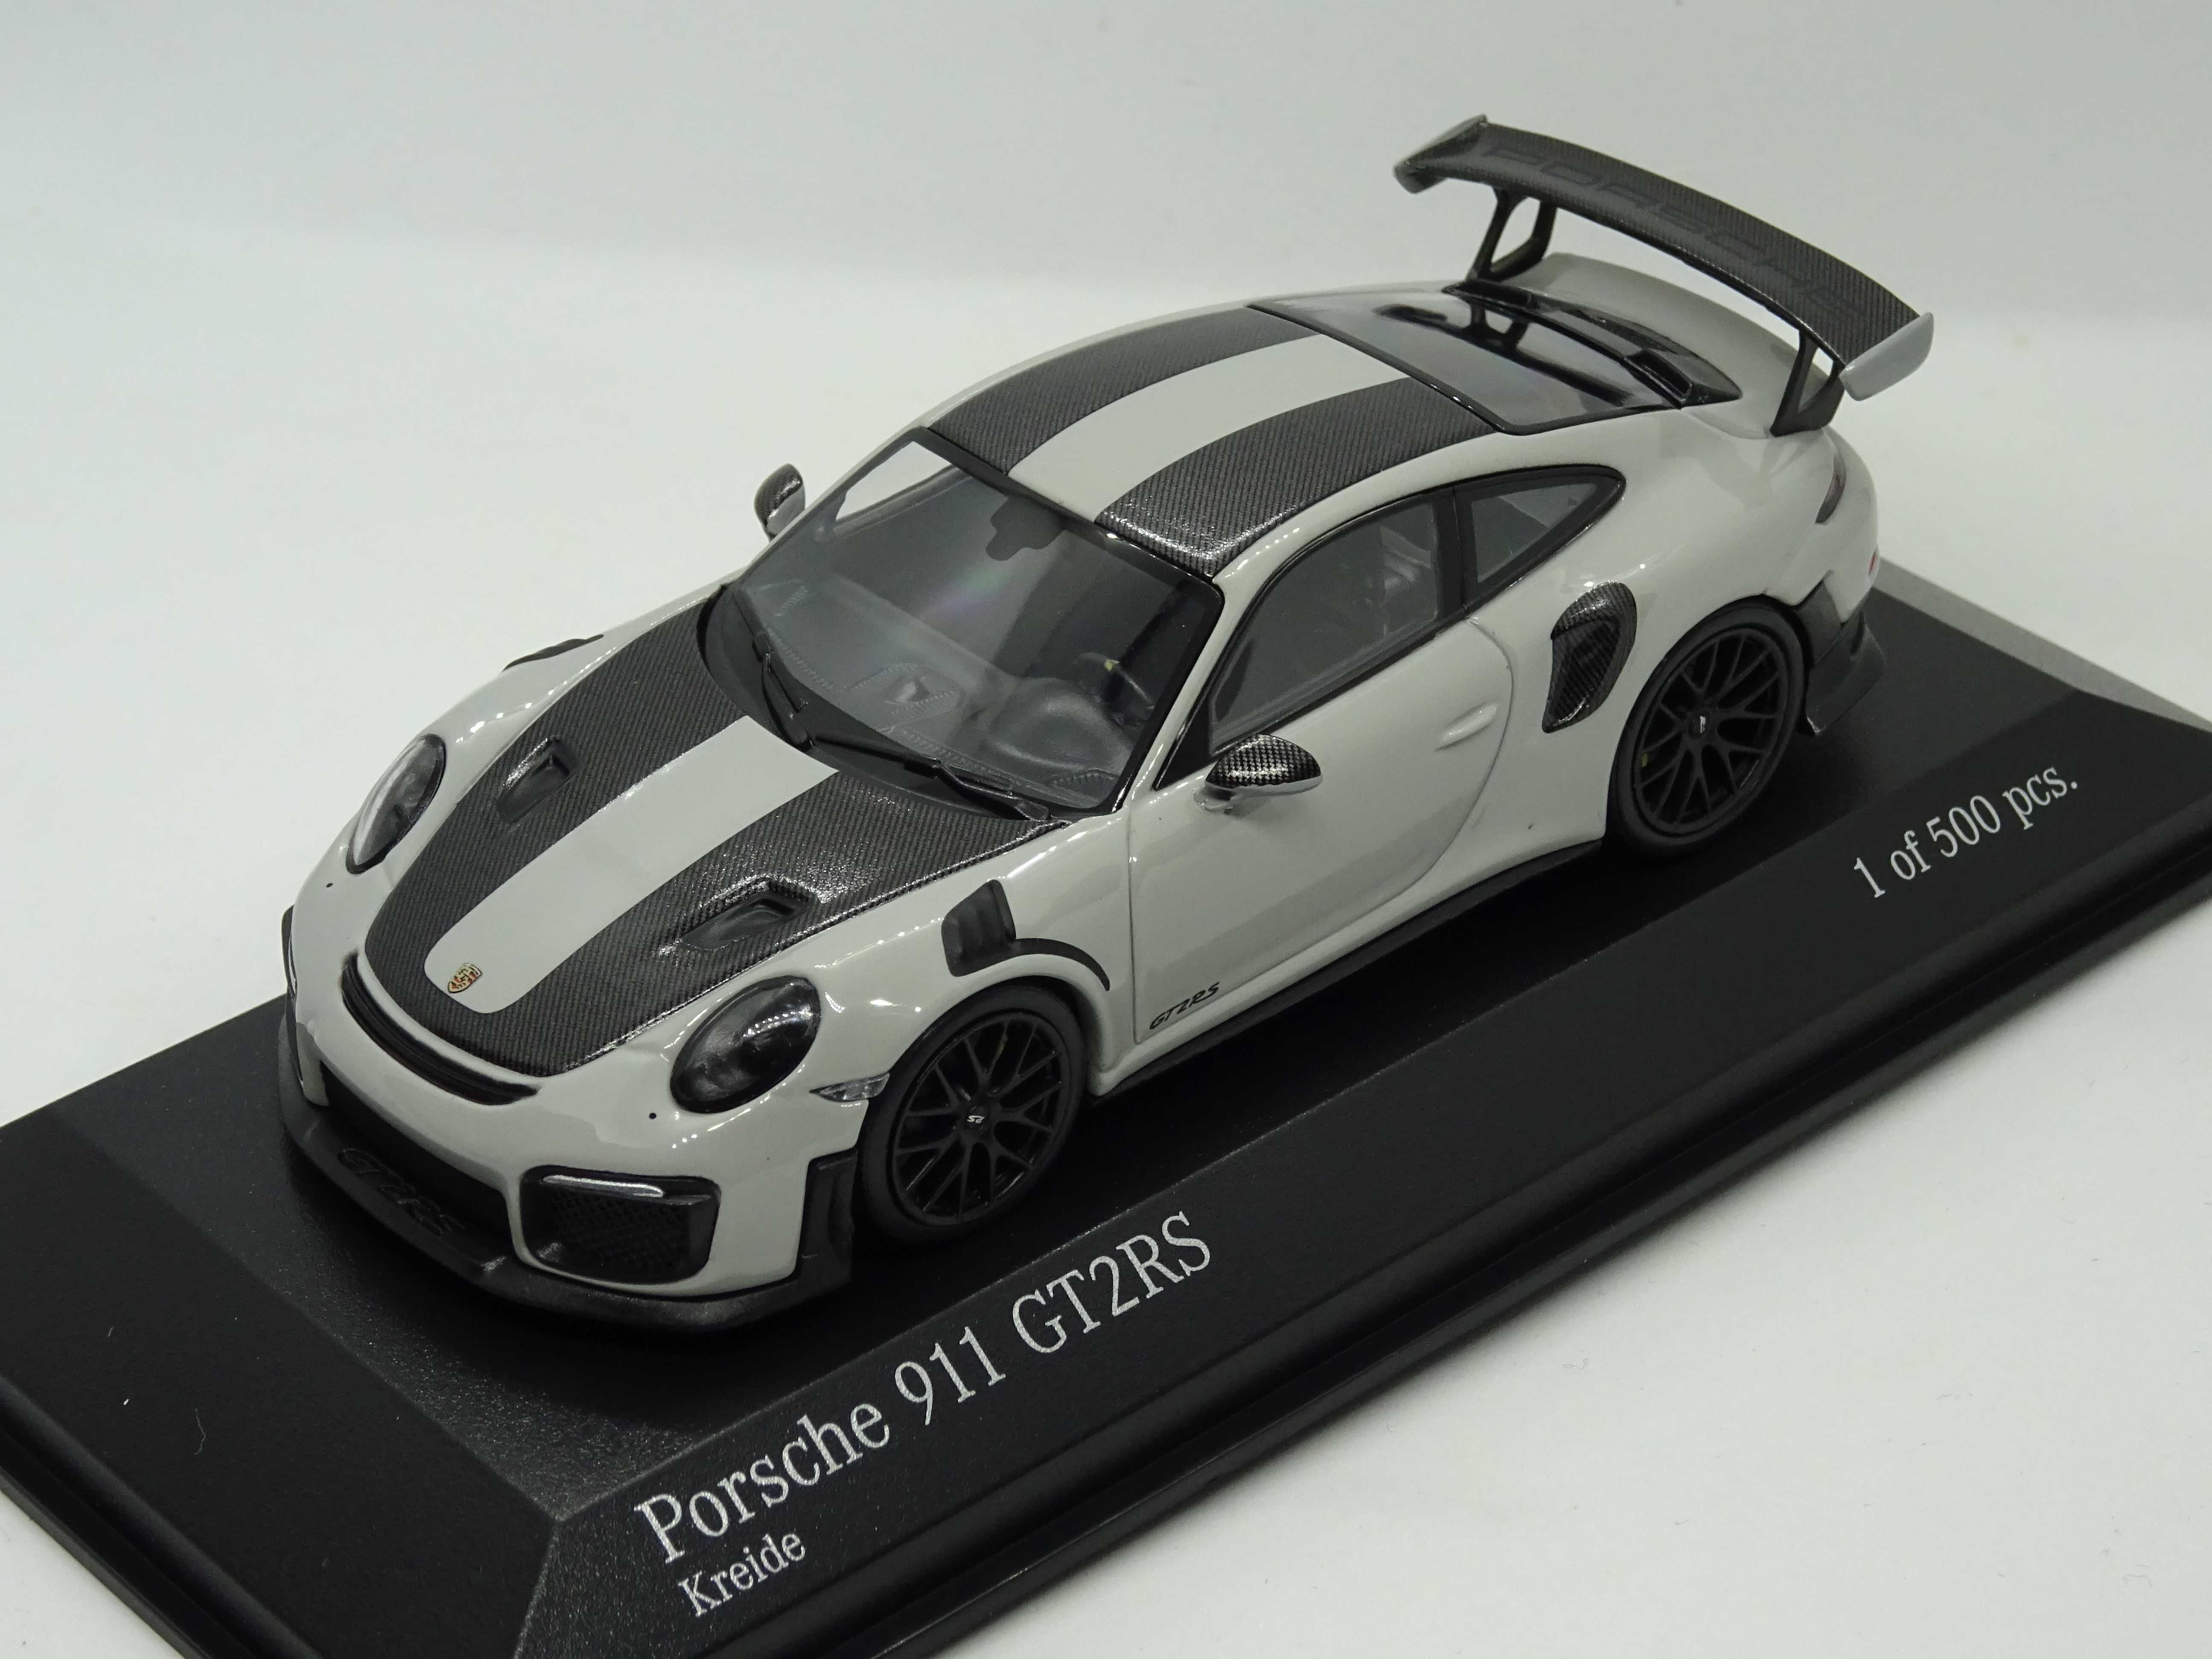 Macheta Porsche 911 GT2RS Minichamps 1:43